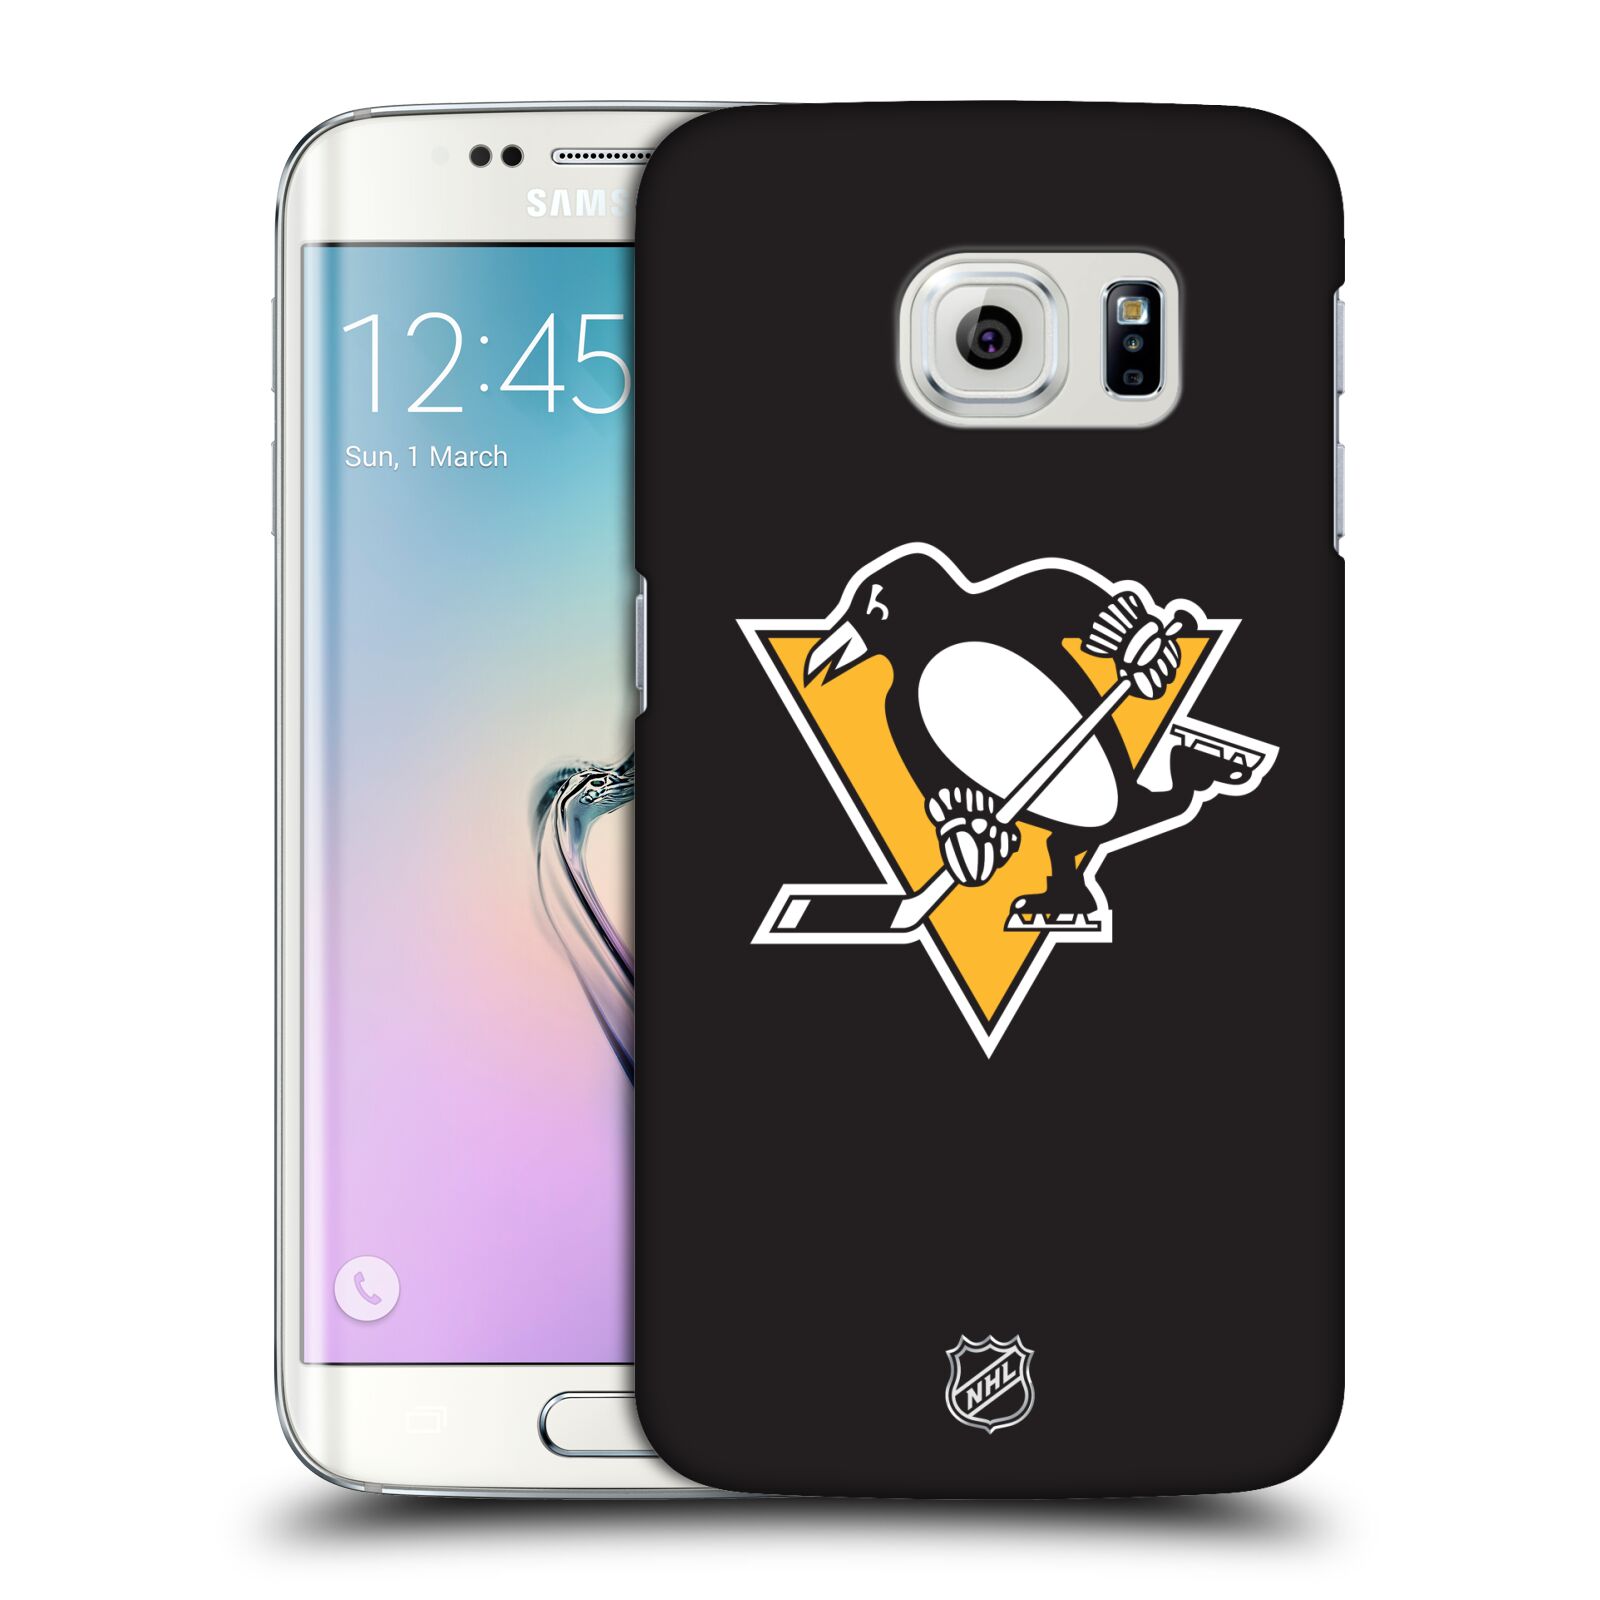 Pouzdro na mobil Samsung Galaxy S6 EDGE - HEAD CASE - Hokej NHL - Pittsburgh Penguins - černé pozadí znak